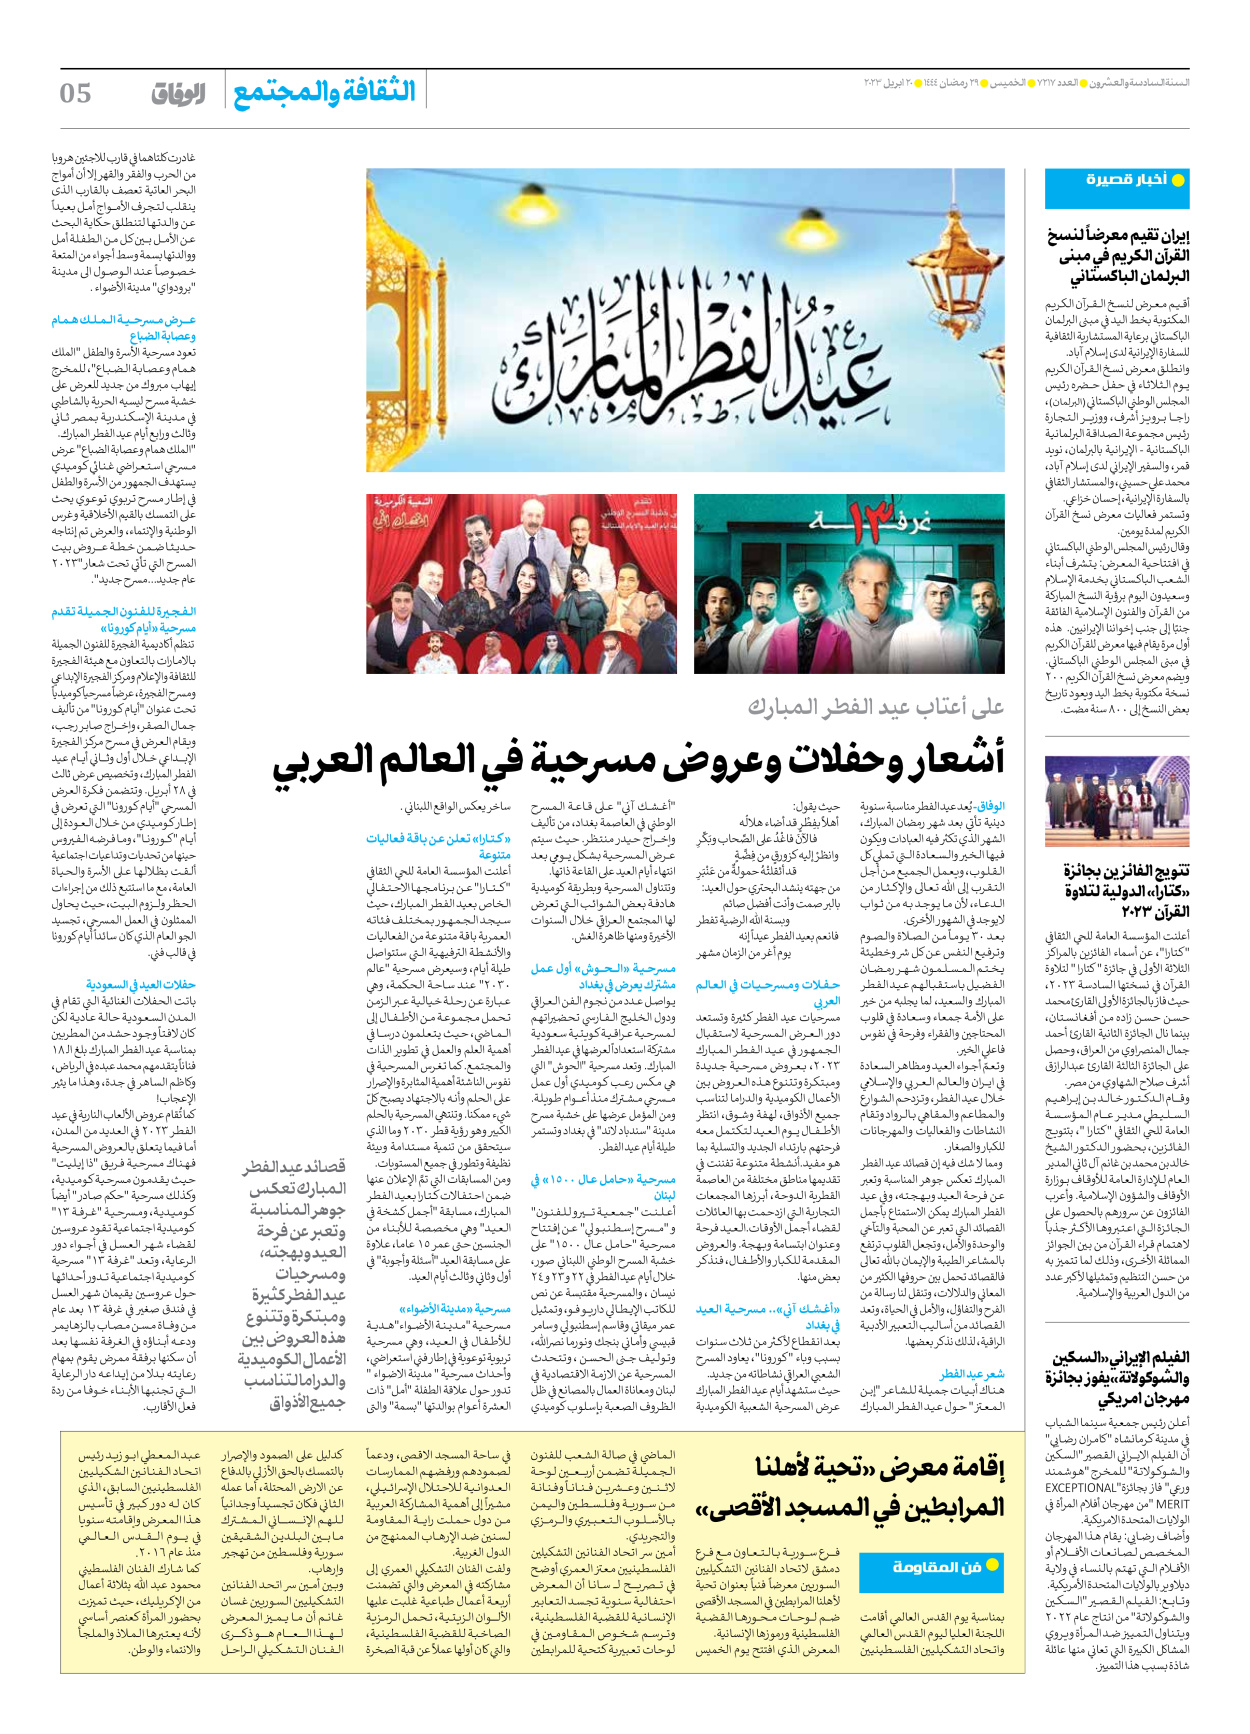 صحیفة ایران الدولیة الوفاق - العدد سبعة آلاف ومائتان وسبعة عشر - ٢٠ أبريل ٢٠٢٣ - الصفحة ٥